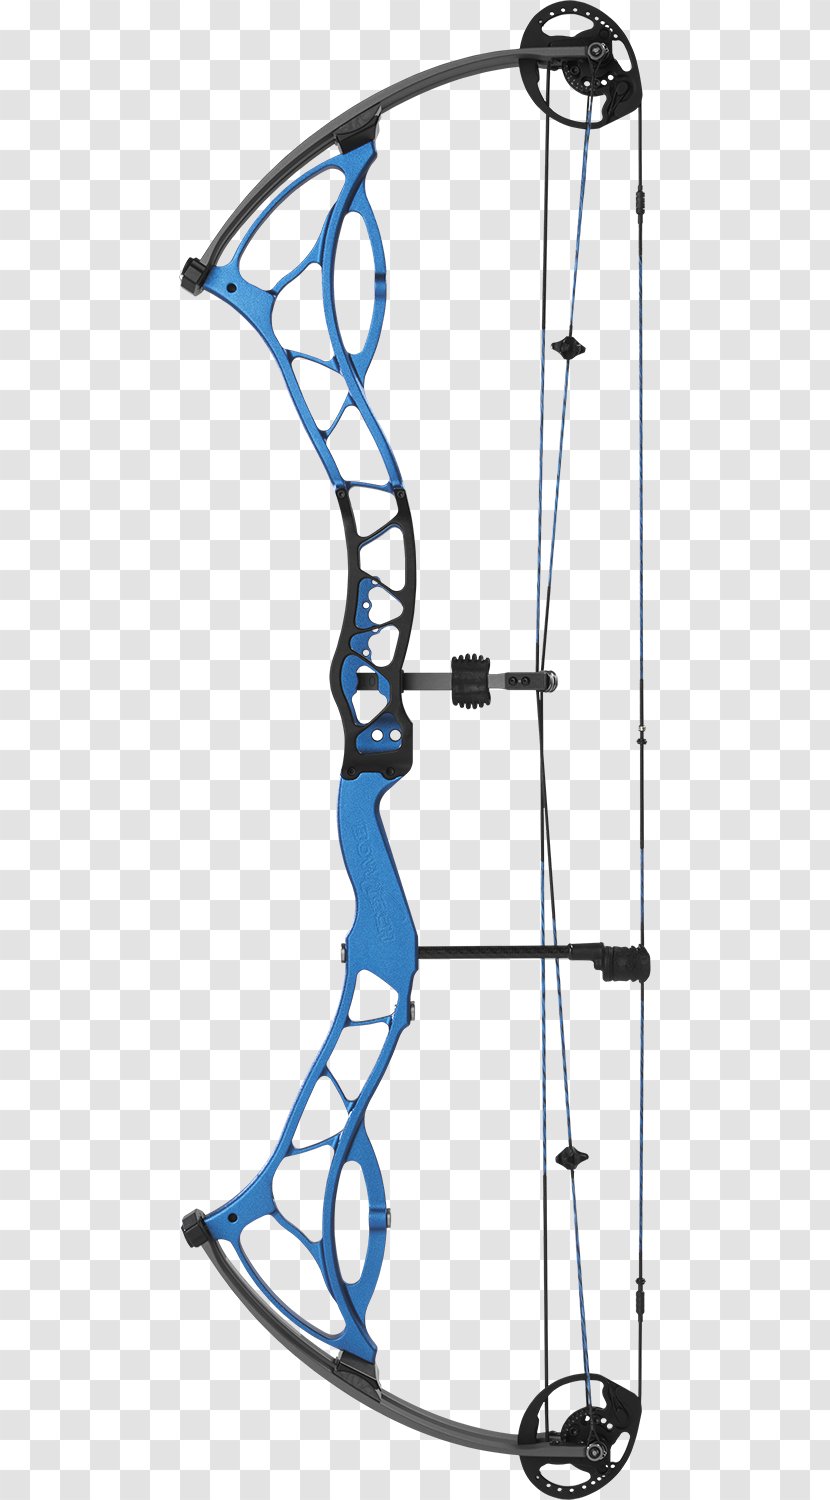 Archery Bow And Arrow Compound Bows BOWTECH, INC Bowtech Carbon Rose - Inc - Shirts Transparent PNG